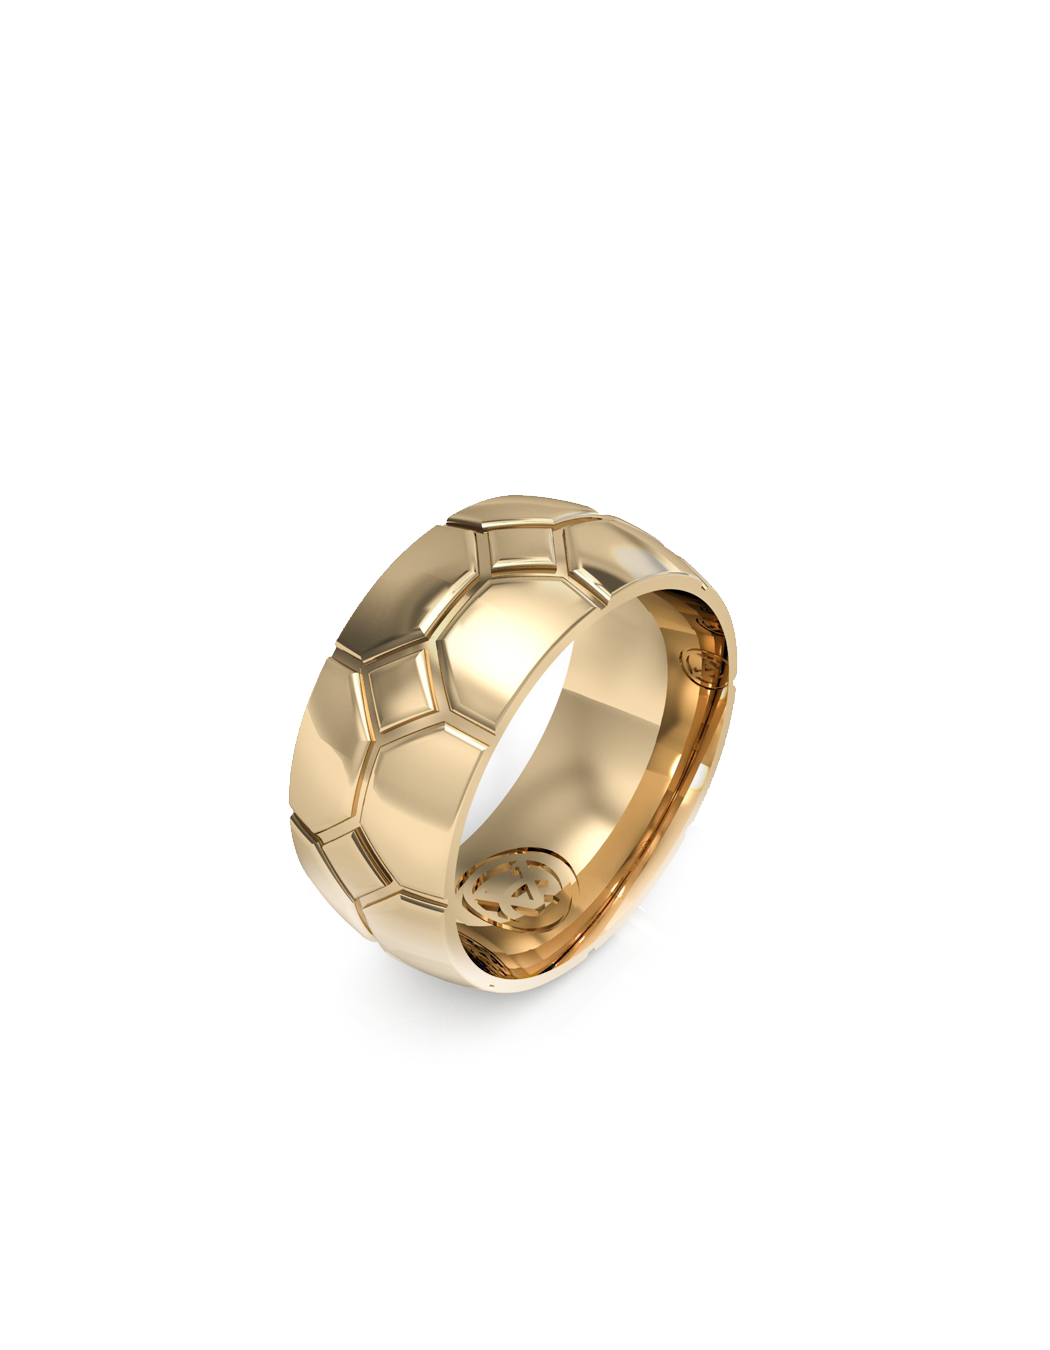 Honu Sea Turtle Ring 14k / 18k Gold